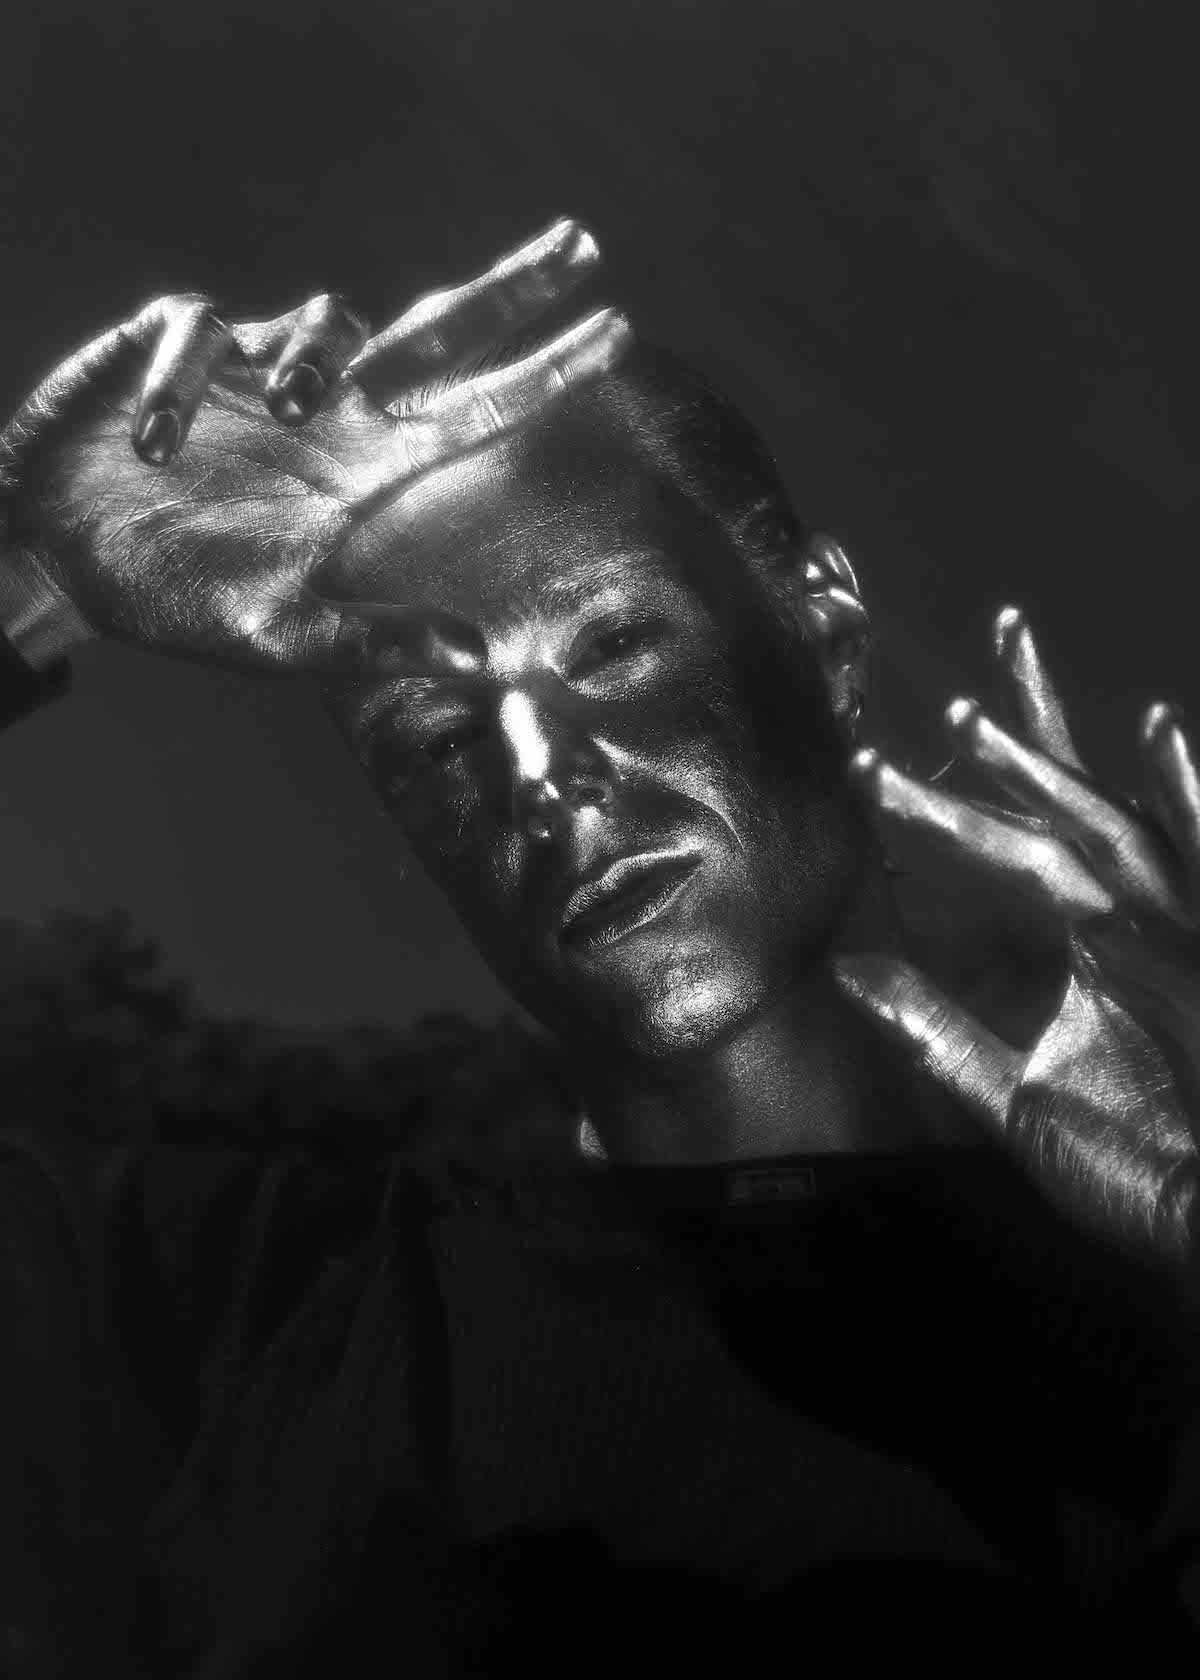 Monochromes Schwarz-Weiß-Porträtfoto von J. Vague, auf dem seine Hände, Gesicht und Hals ganz mit silberner Farbe bedeckt sind. Der Hintergrund ist dunkelgrau. Er hält den Kopf leicht schräg und die Hände filigran vor der Stirn und neben seinem Gesicht. Er trägt ein schwarzes Oberteil.